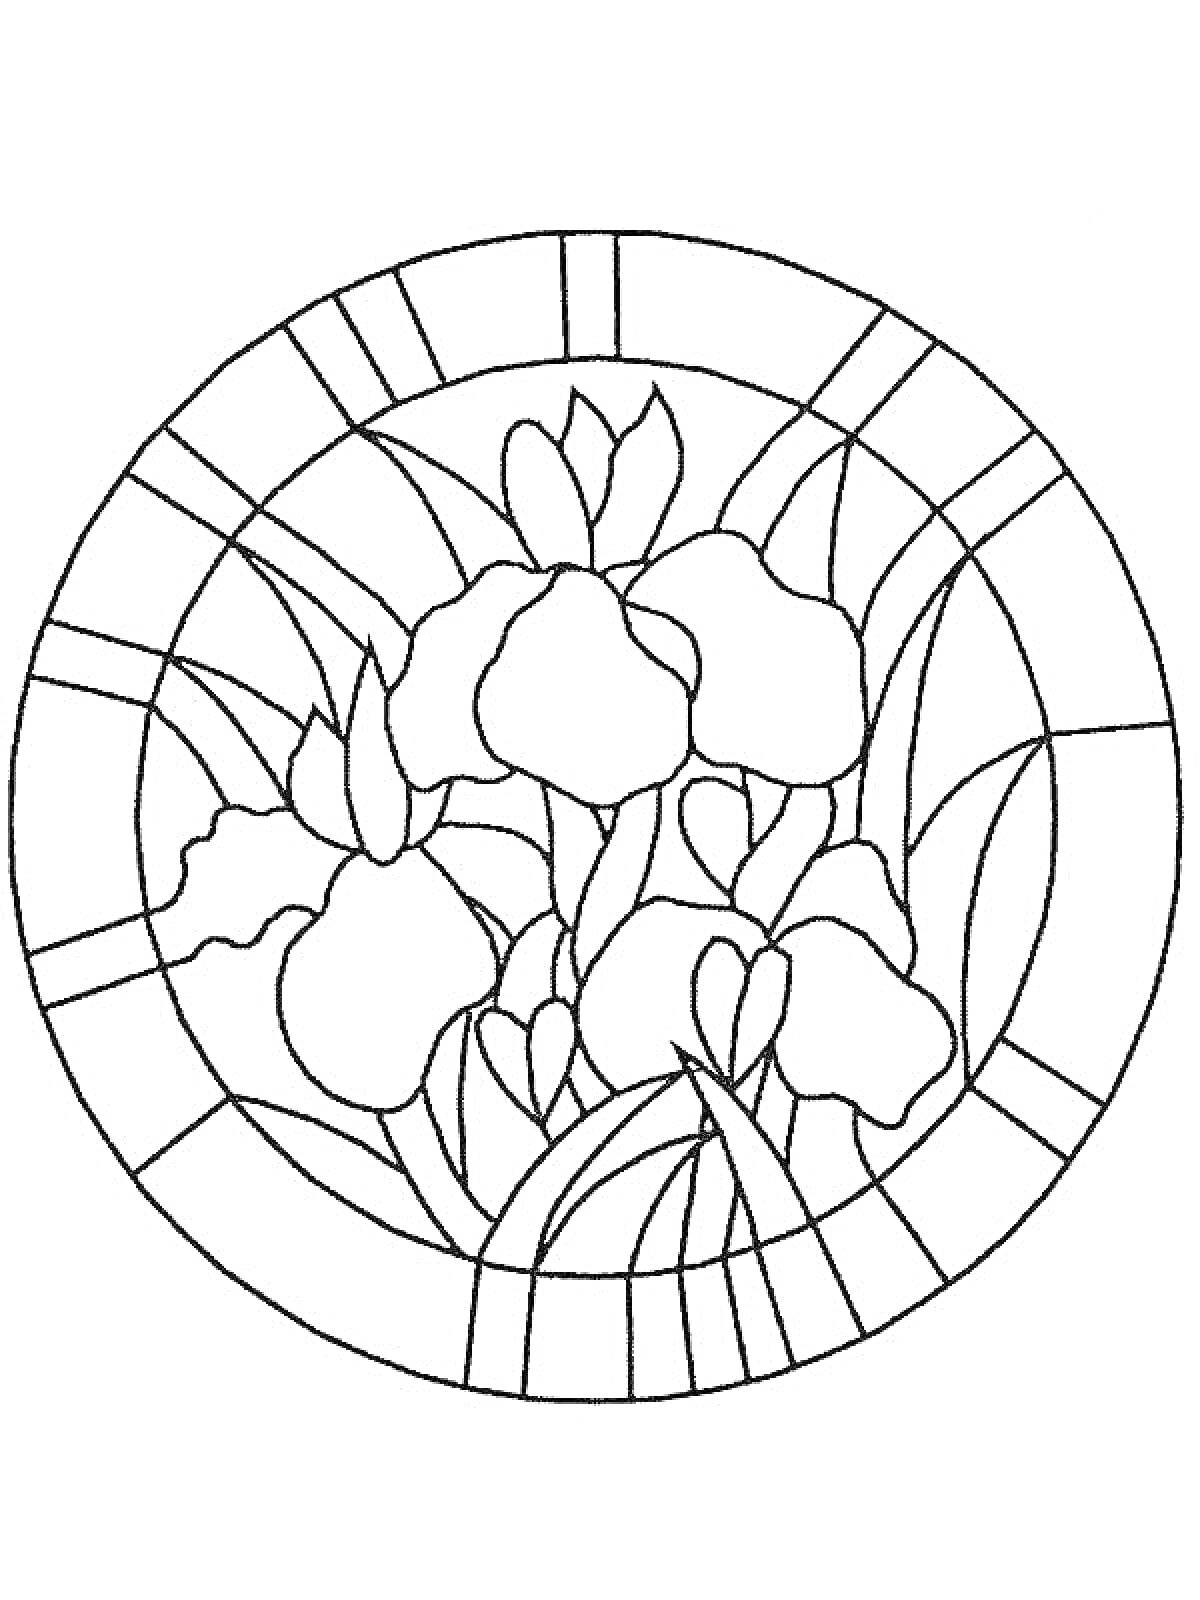 Раскраска Витраж с ирисами и абстрактными узорами в круге